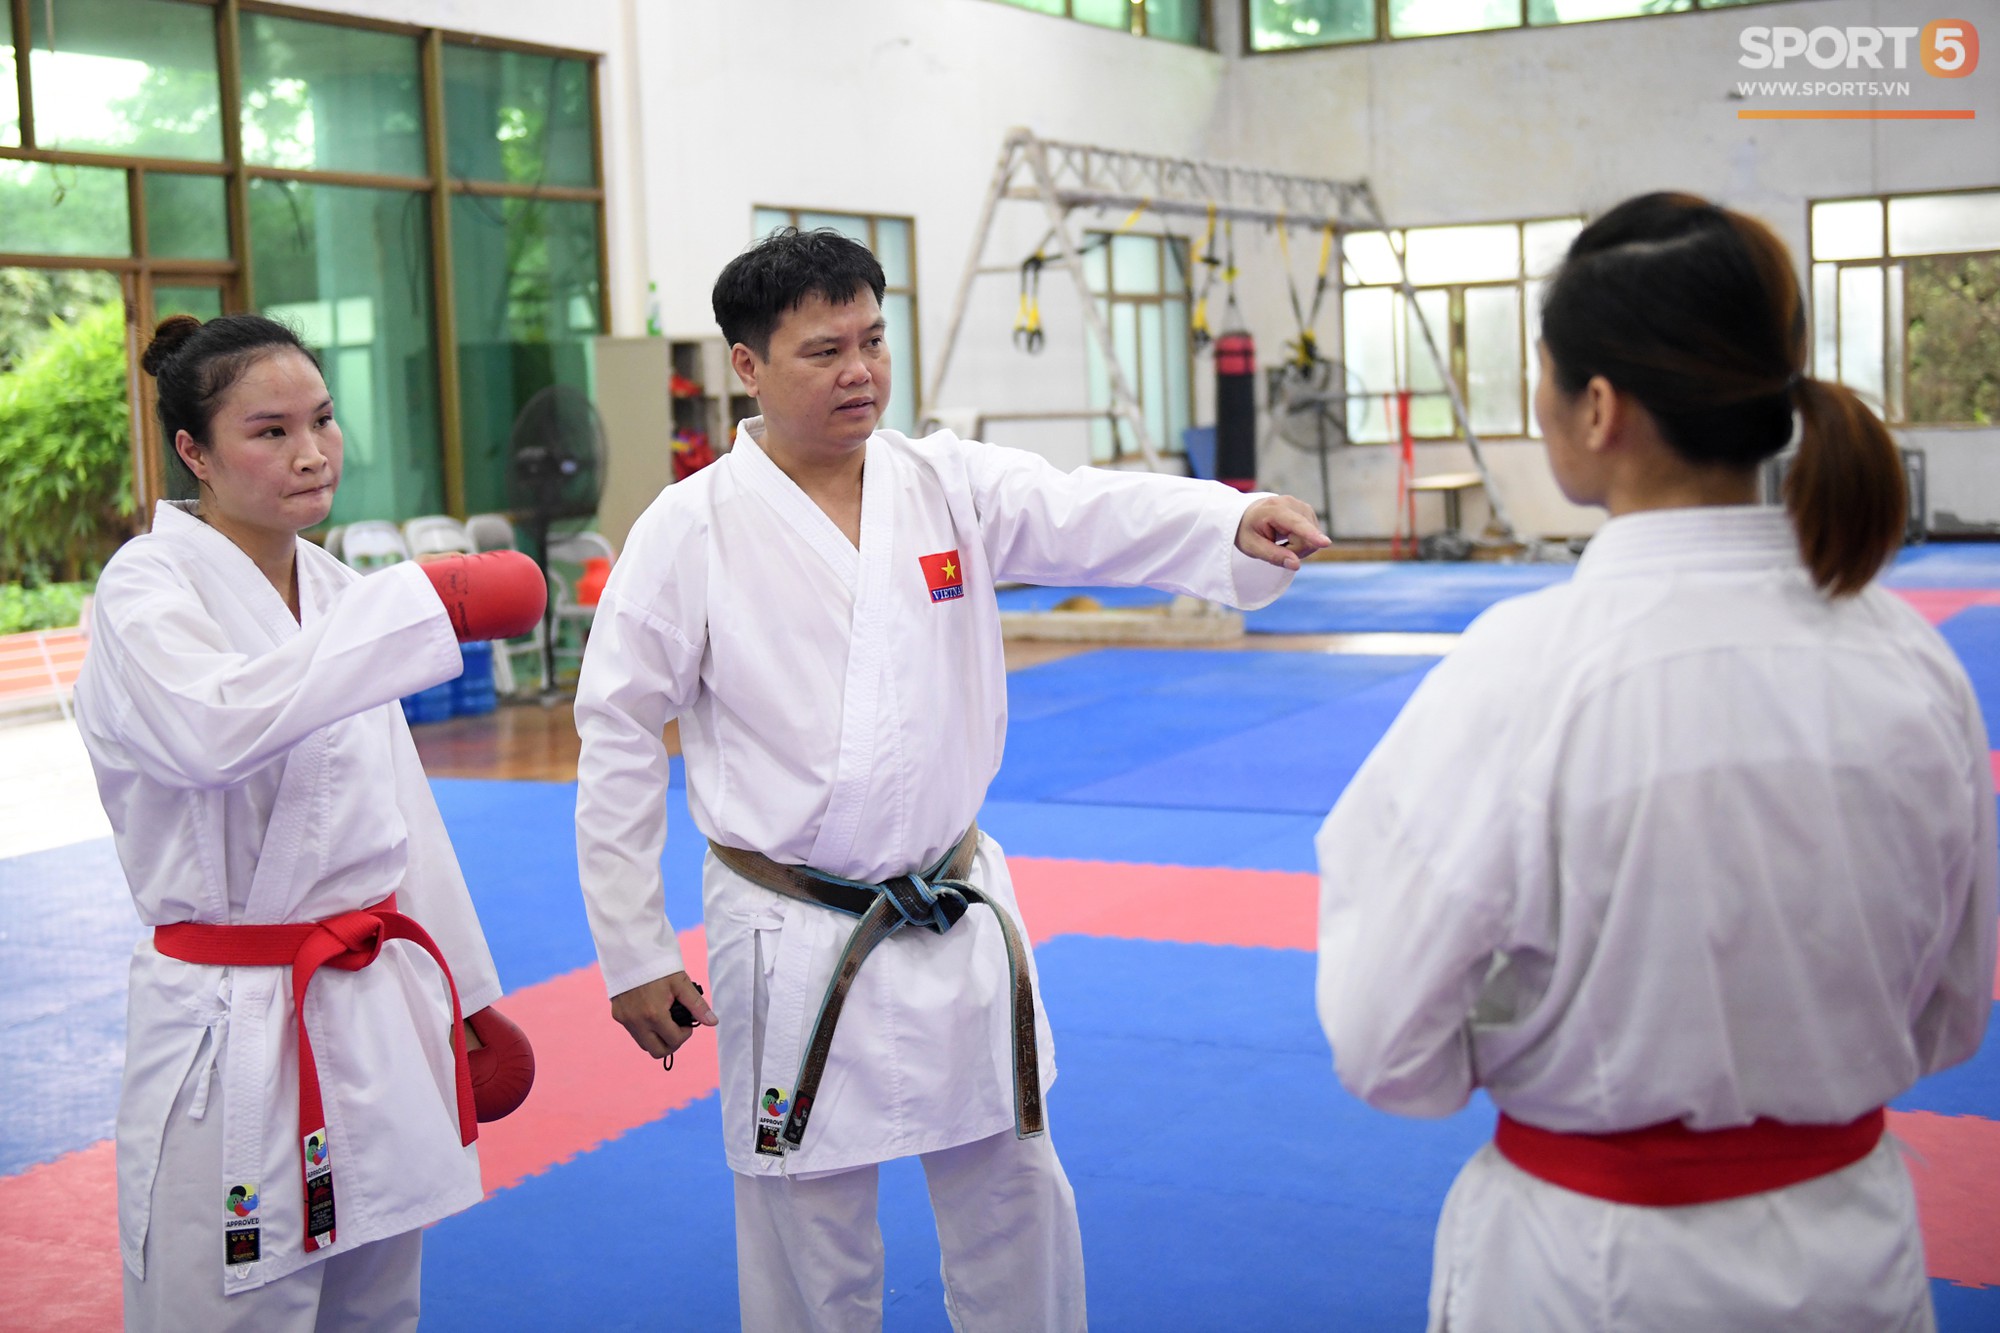 Các nữ võ sĩ Karate Việt Nam miệt mài tập luyện, sẵn sàng tranh tài tại Asiad 2018 - Ảnh 2.